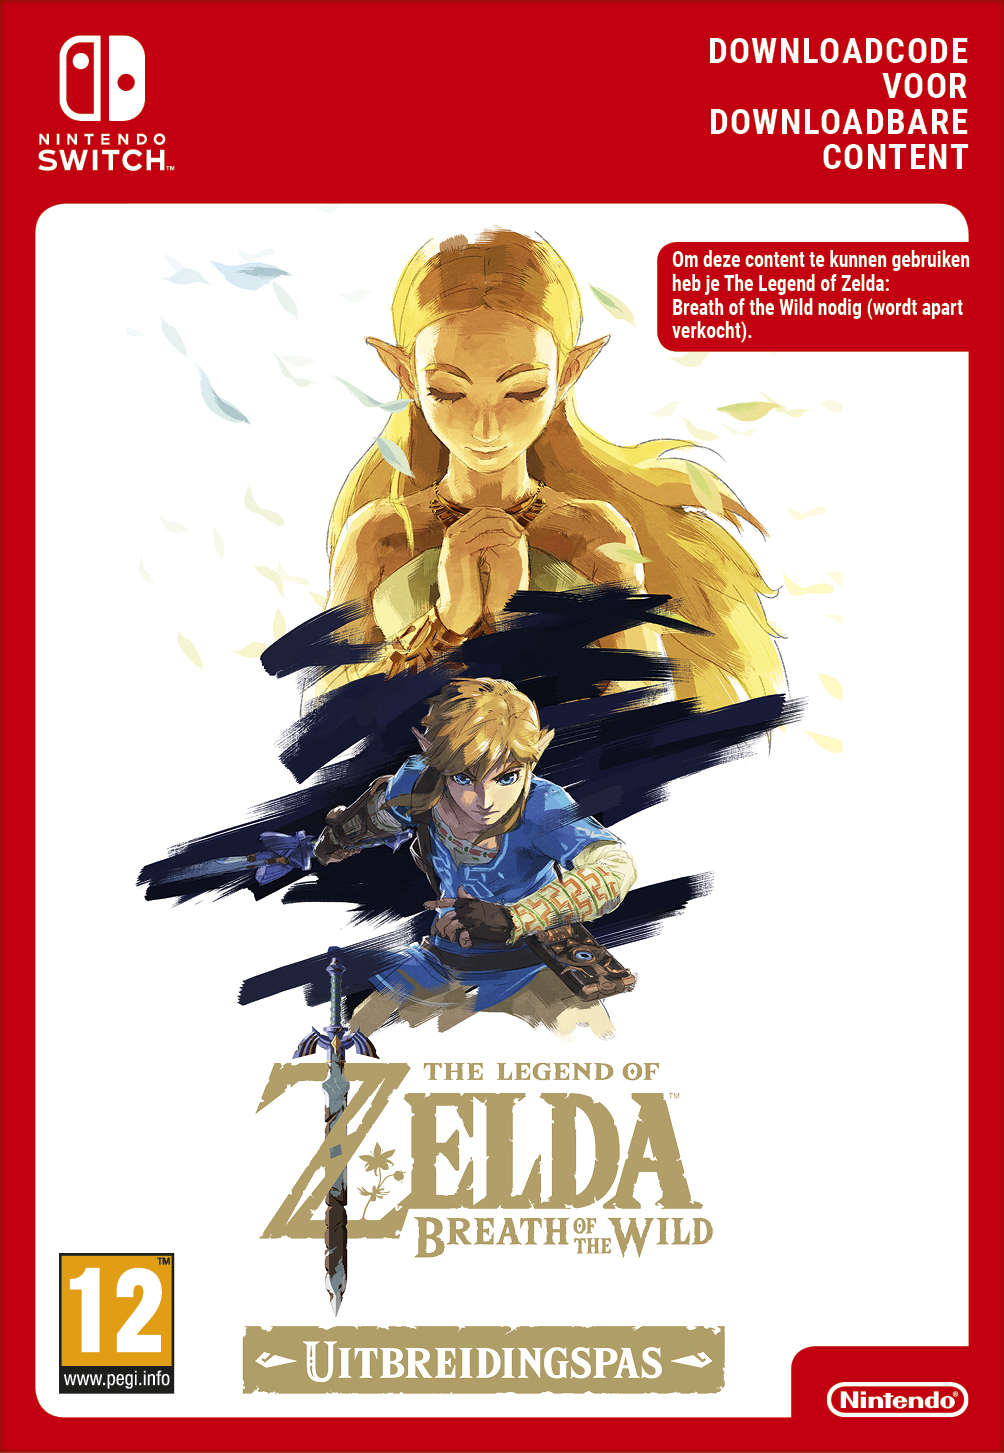 Uitbreidingspas voor The Legend of Zelda™ Breath of the Wild 19,99 EUR